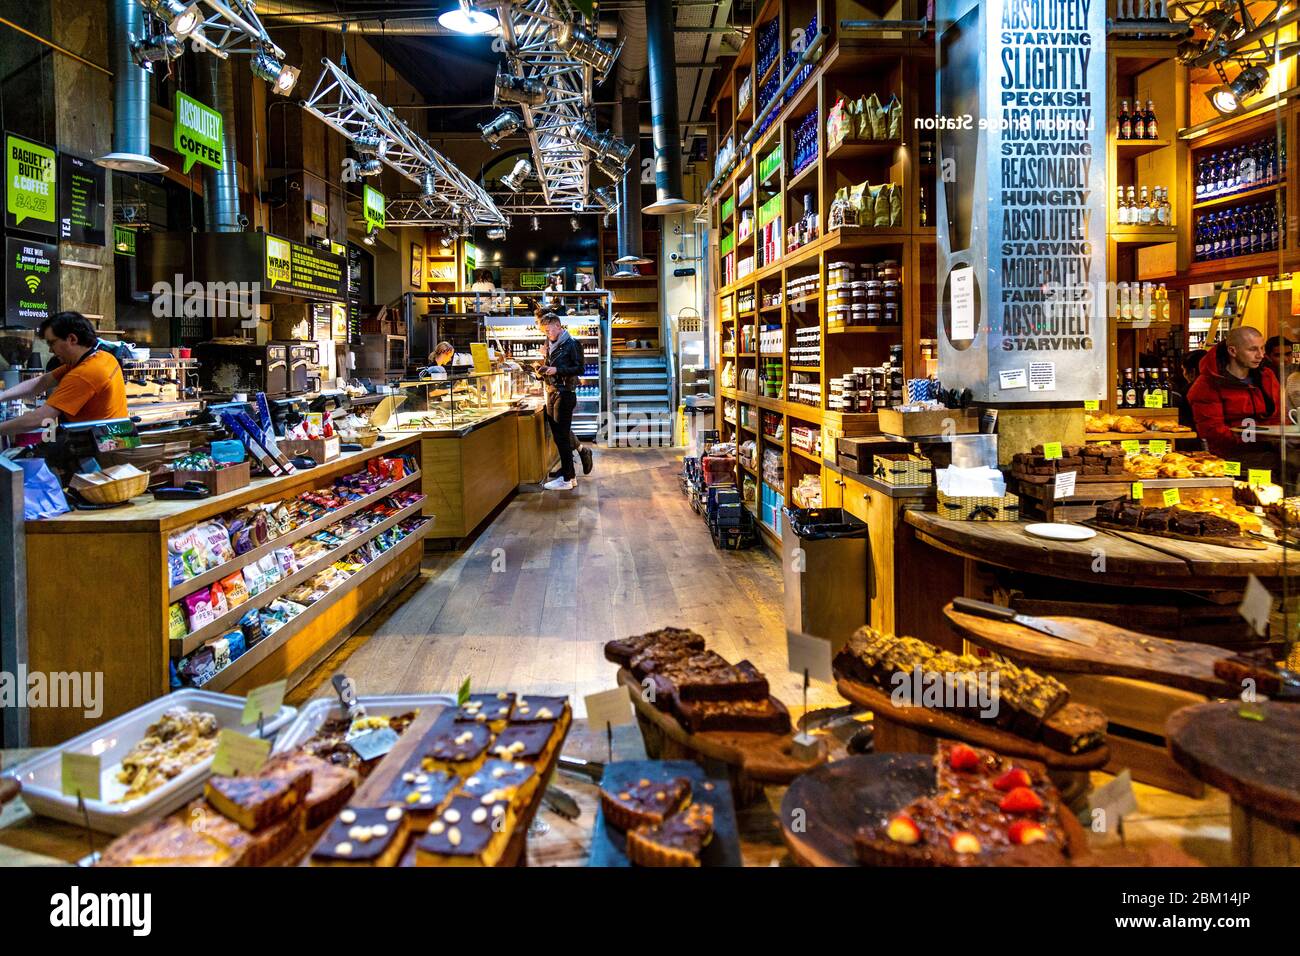 Interieur eines absolut hungernden Deli, Café und Supermarkt, London, Großbritannien Stockfoto